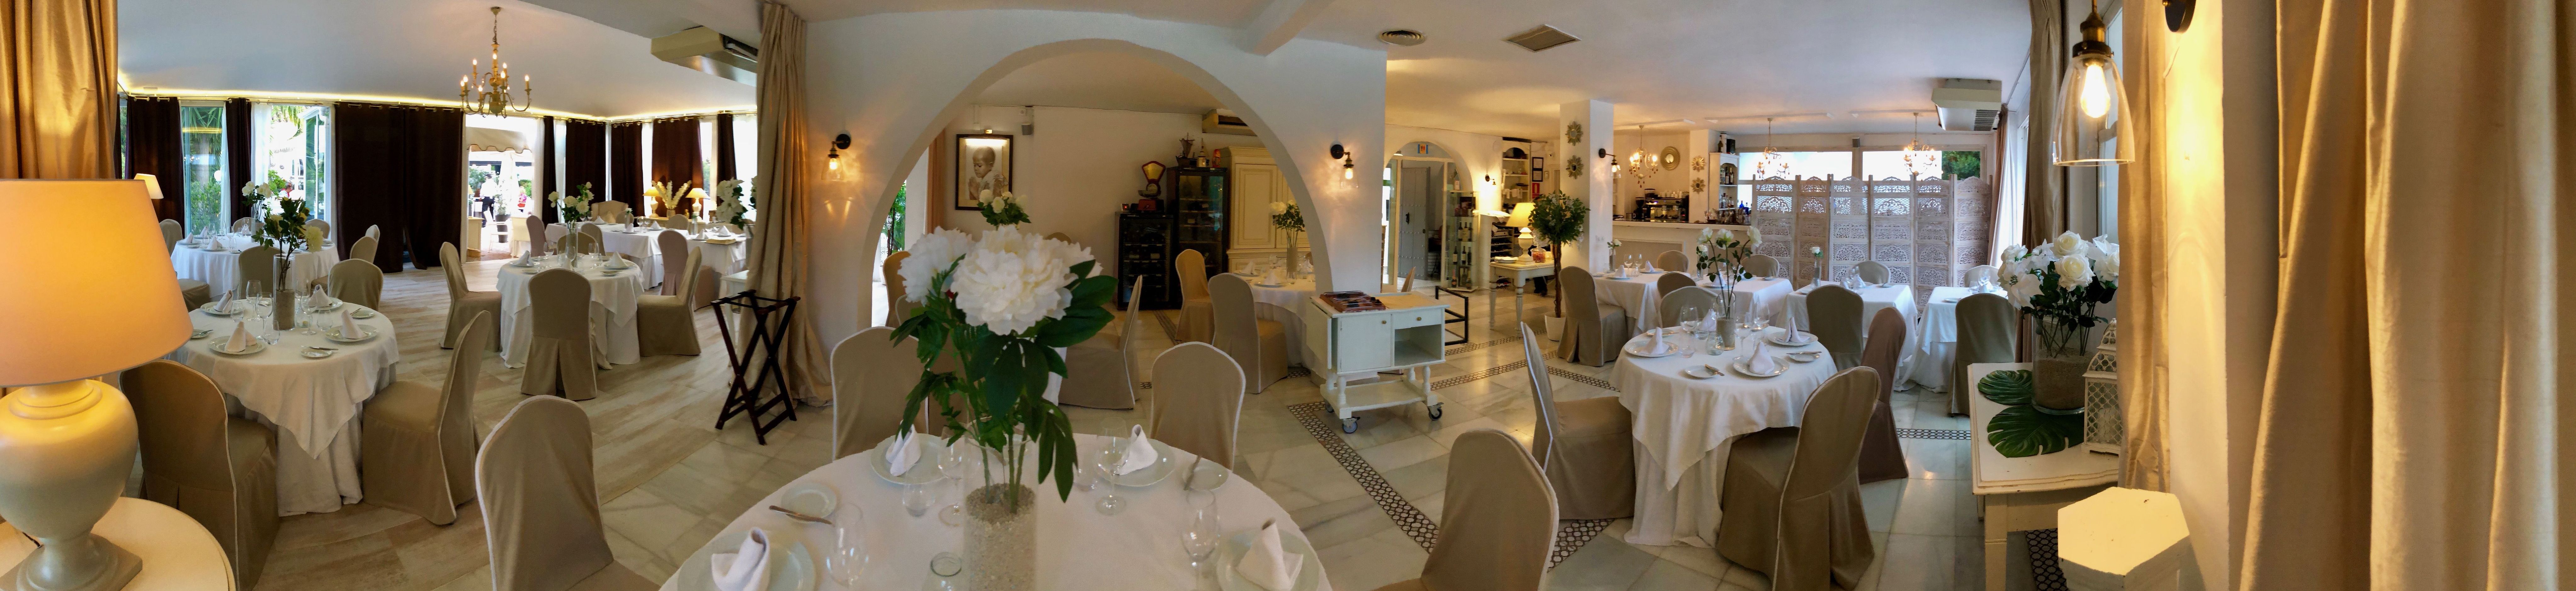 Foto 24 de Mediterranean cuisine en Marbella | El Cortijo de Ramiro